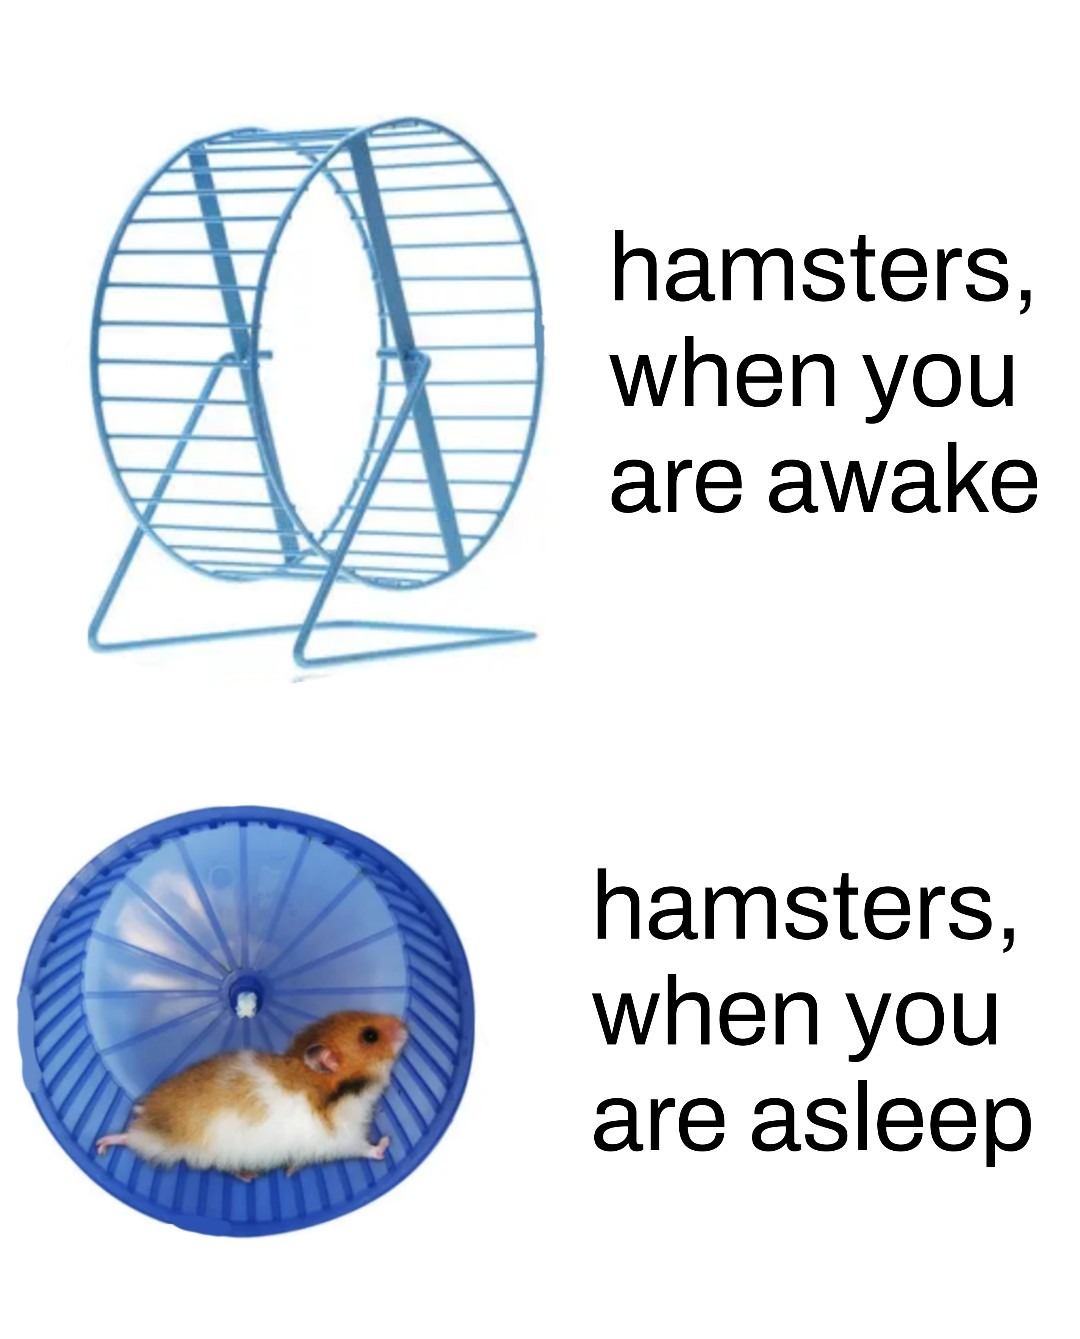 Hamsters - meme